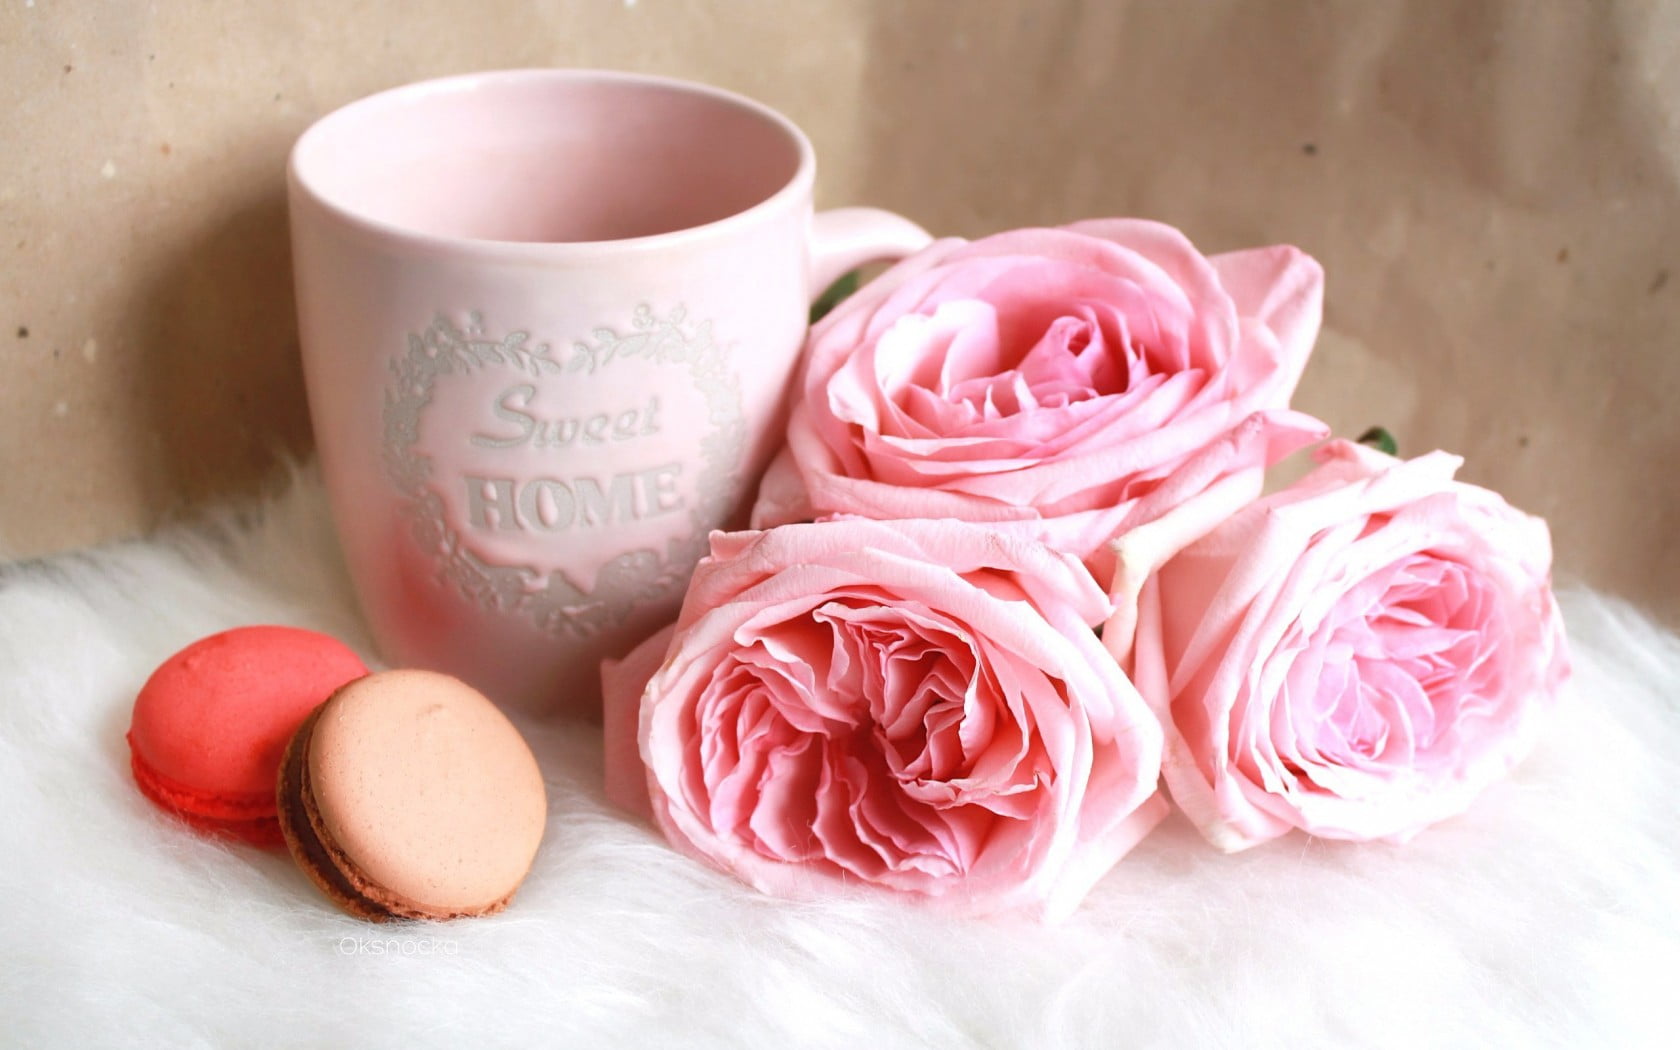 pink rose flowers beside pink ceramic mug